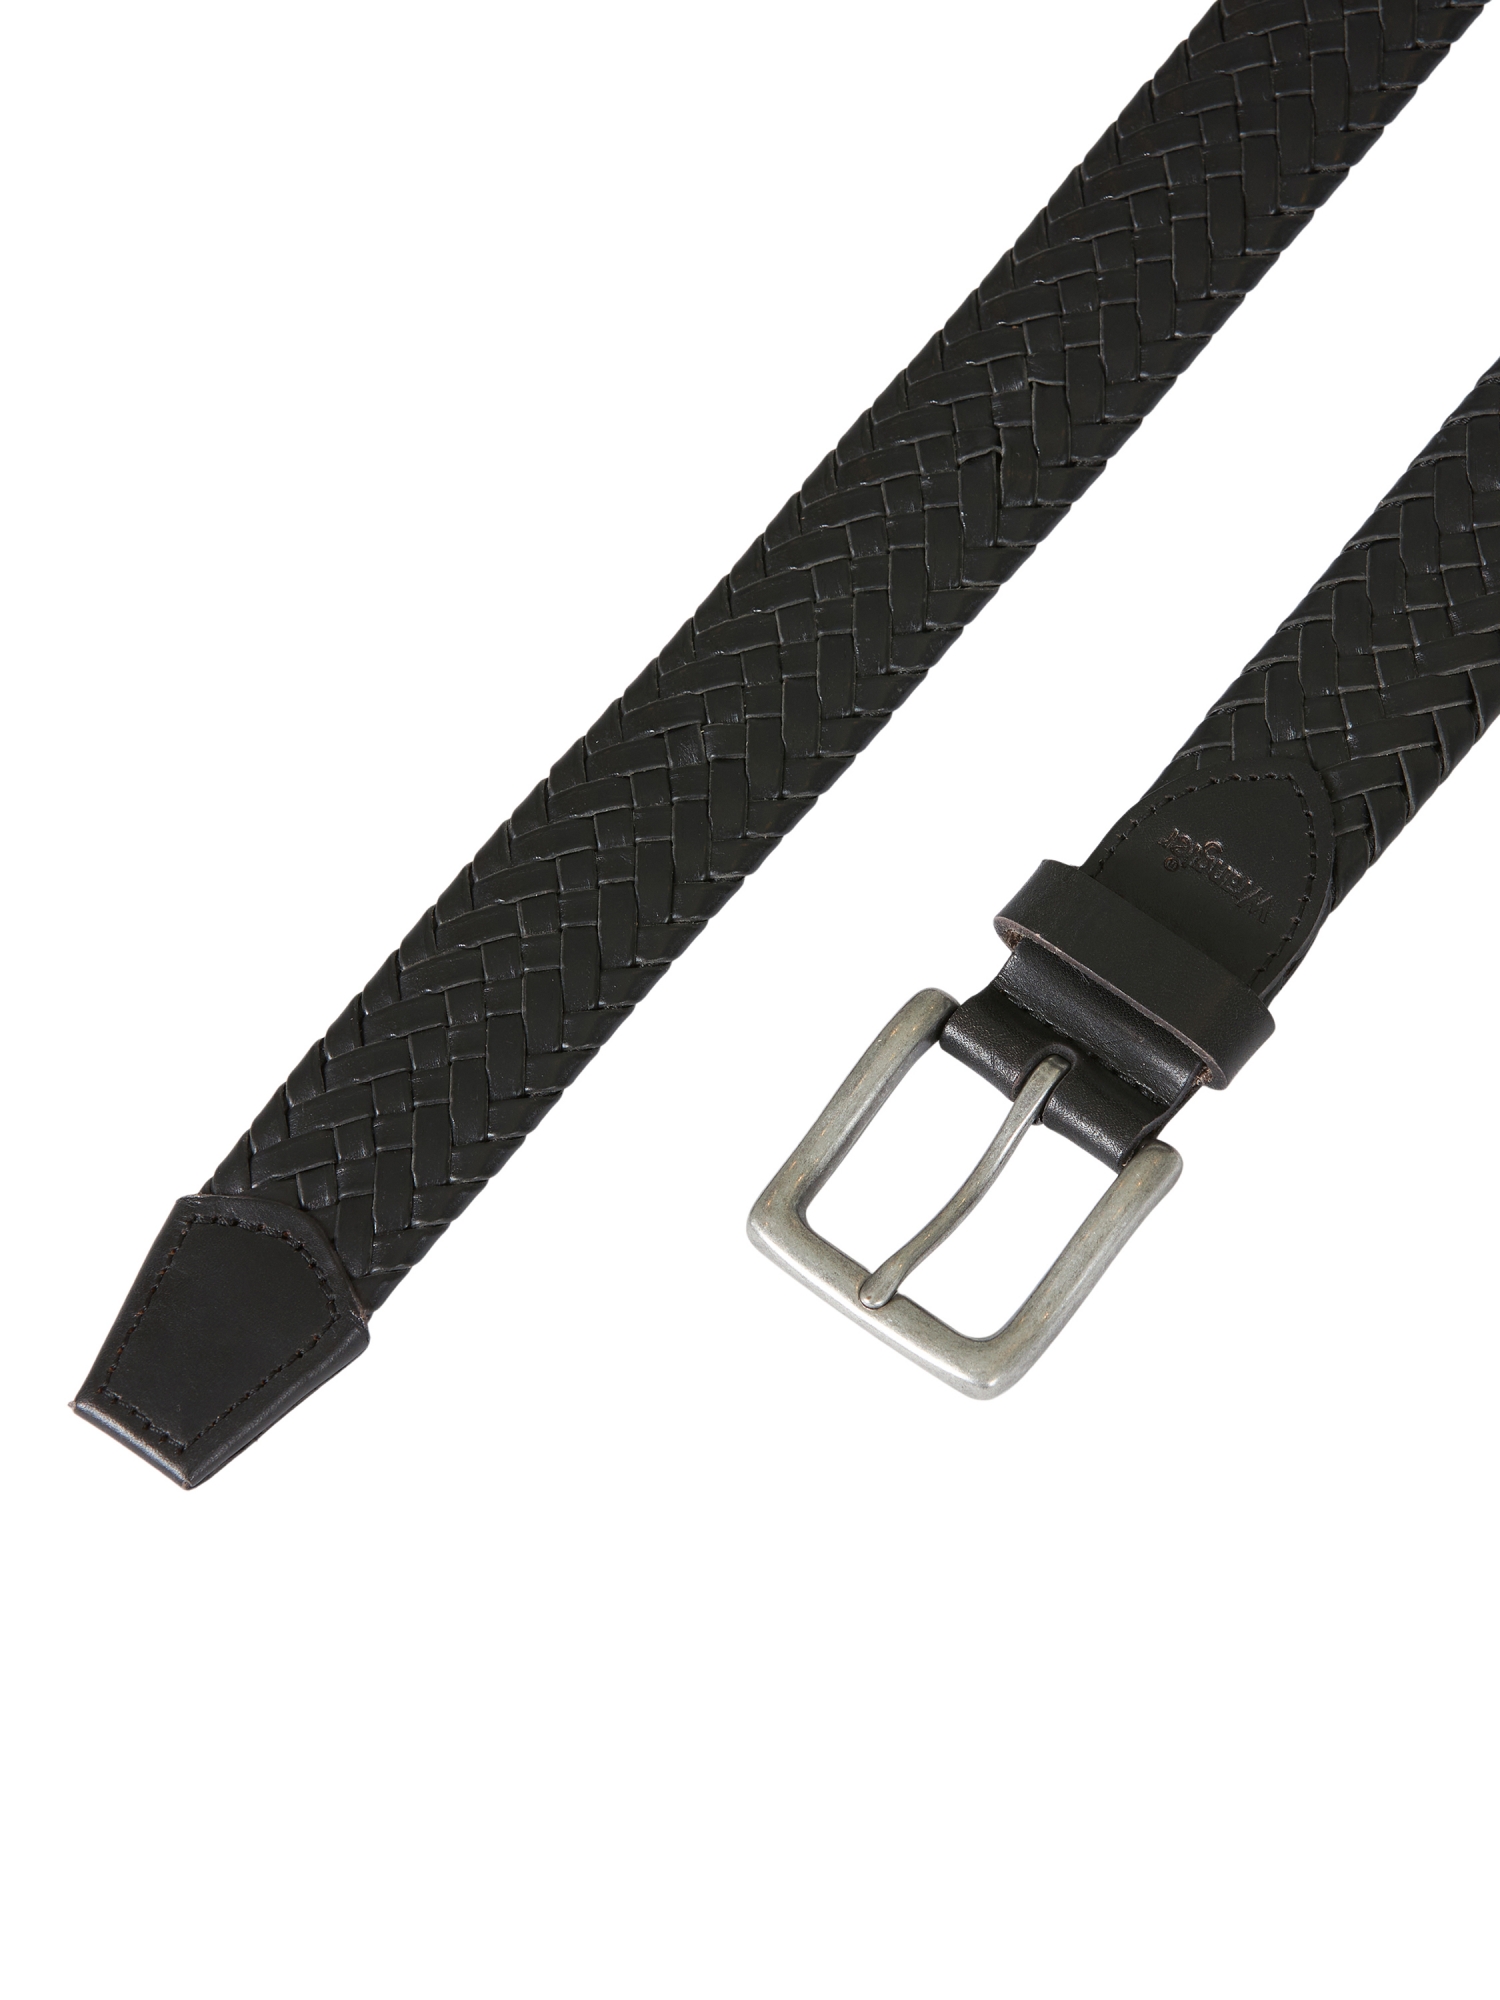 Wrangler Men's Braided Belt - image 2 of 3